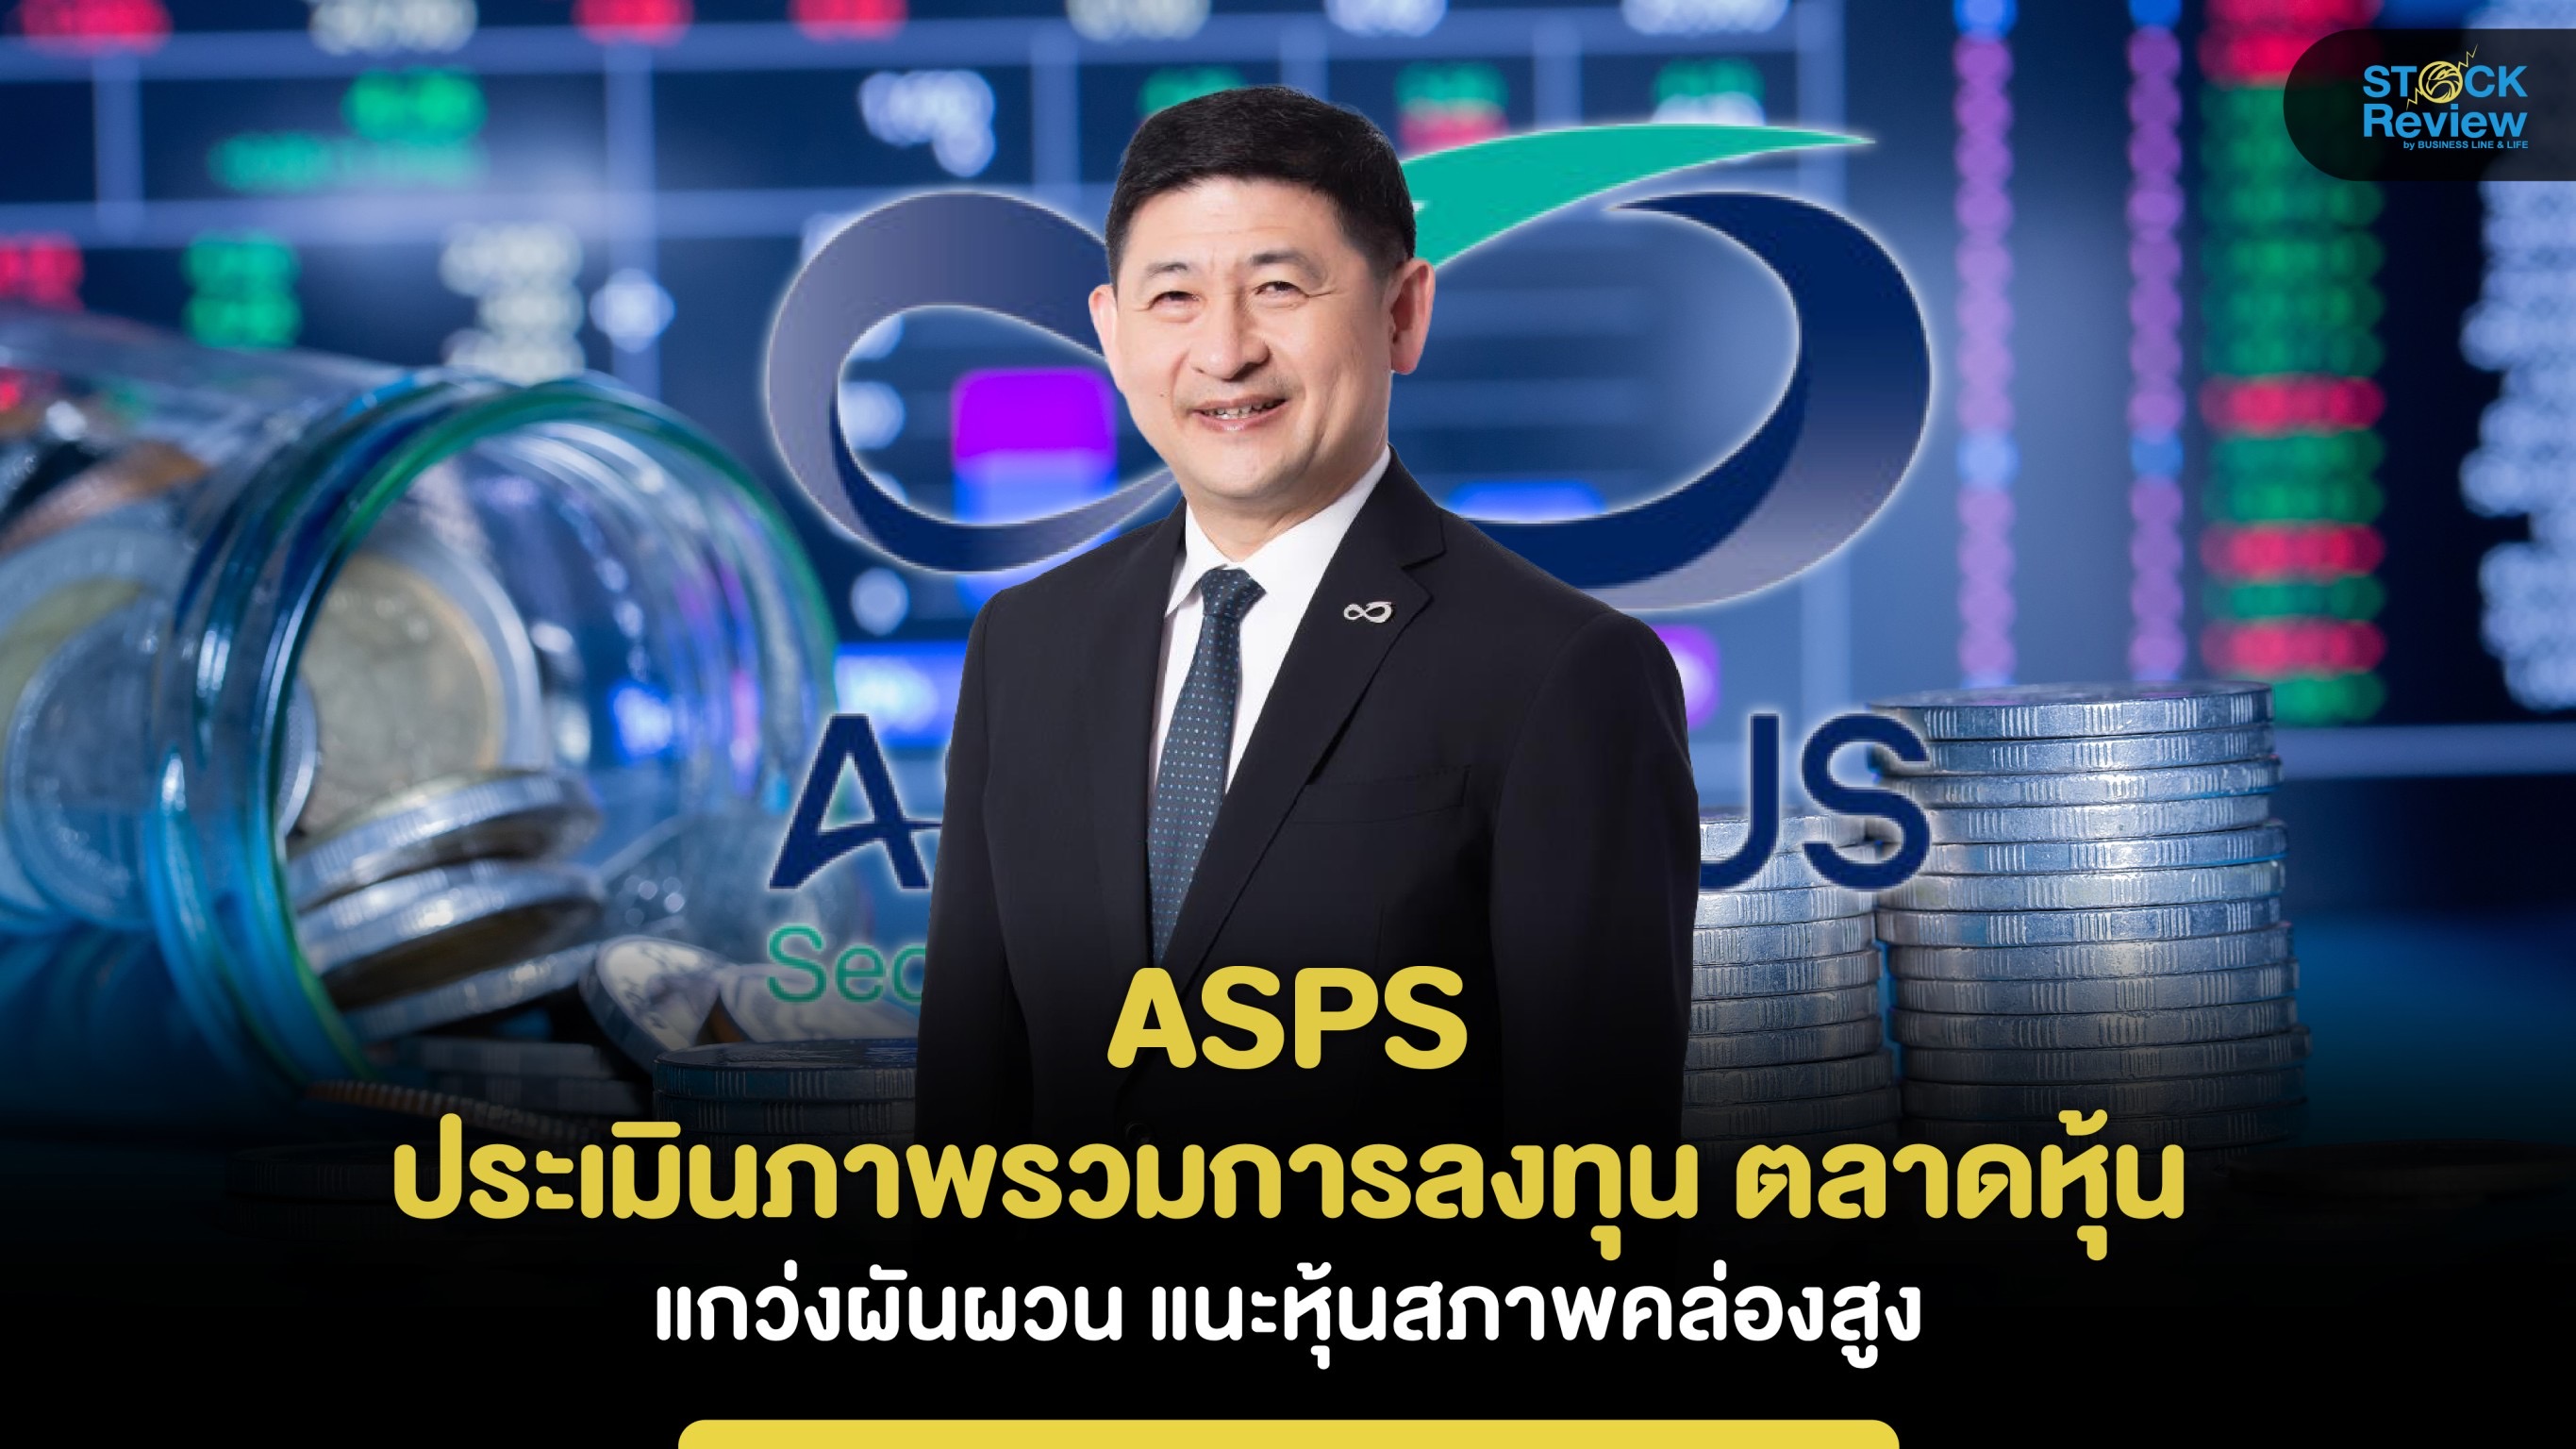 ASPS มองตลาดหุ้นไทย ไตรมาสสองแกว่งผันผวนแนะหุ้นสภาพคล่องสูง